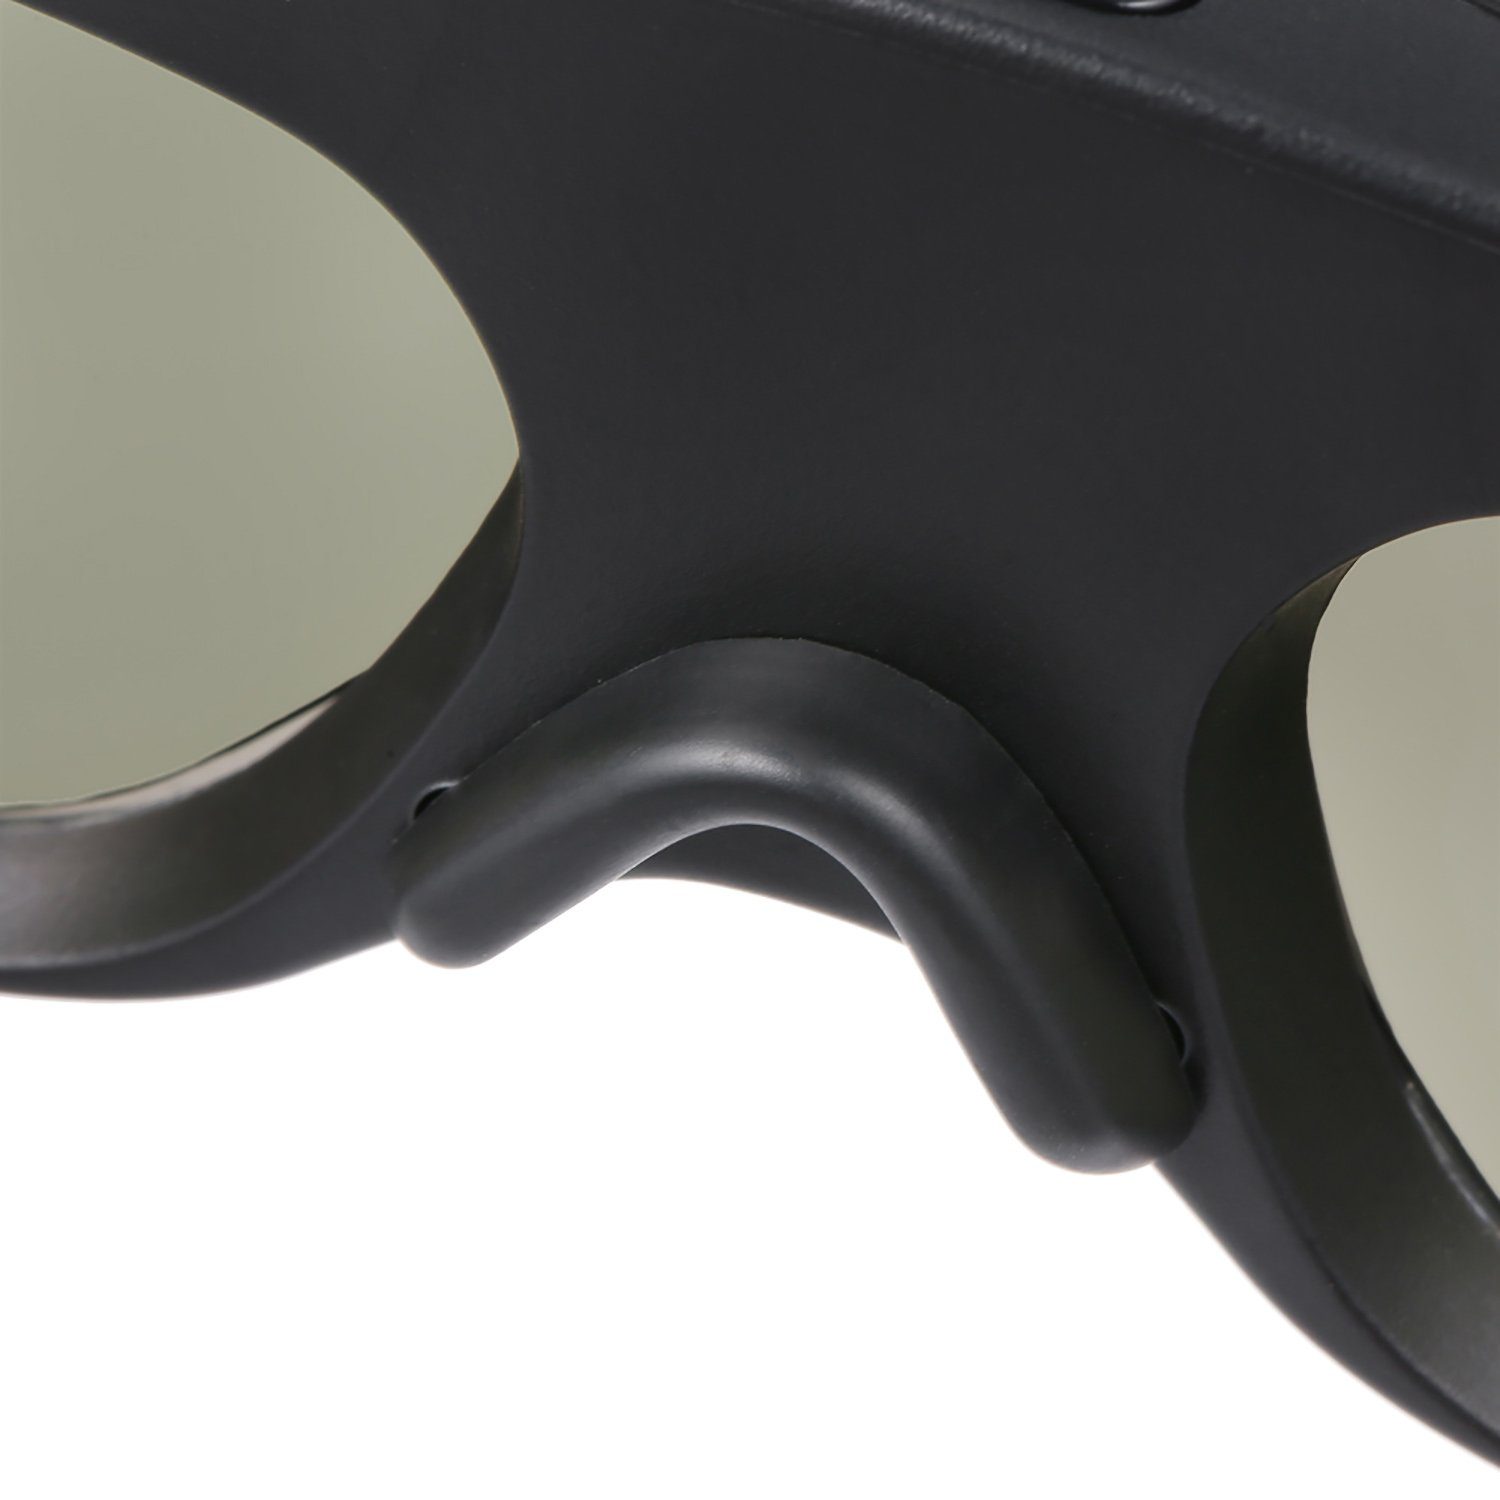 Aktive 5 mit Beamer, 3D Stück DLP kompatibel - 3D Schwarz TPFNet DLP Shutterbrille Brille, Link - 3D-Brille wiederaufladbare